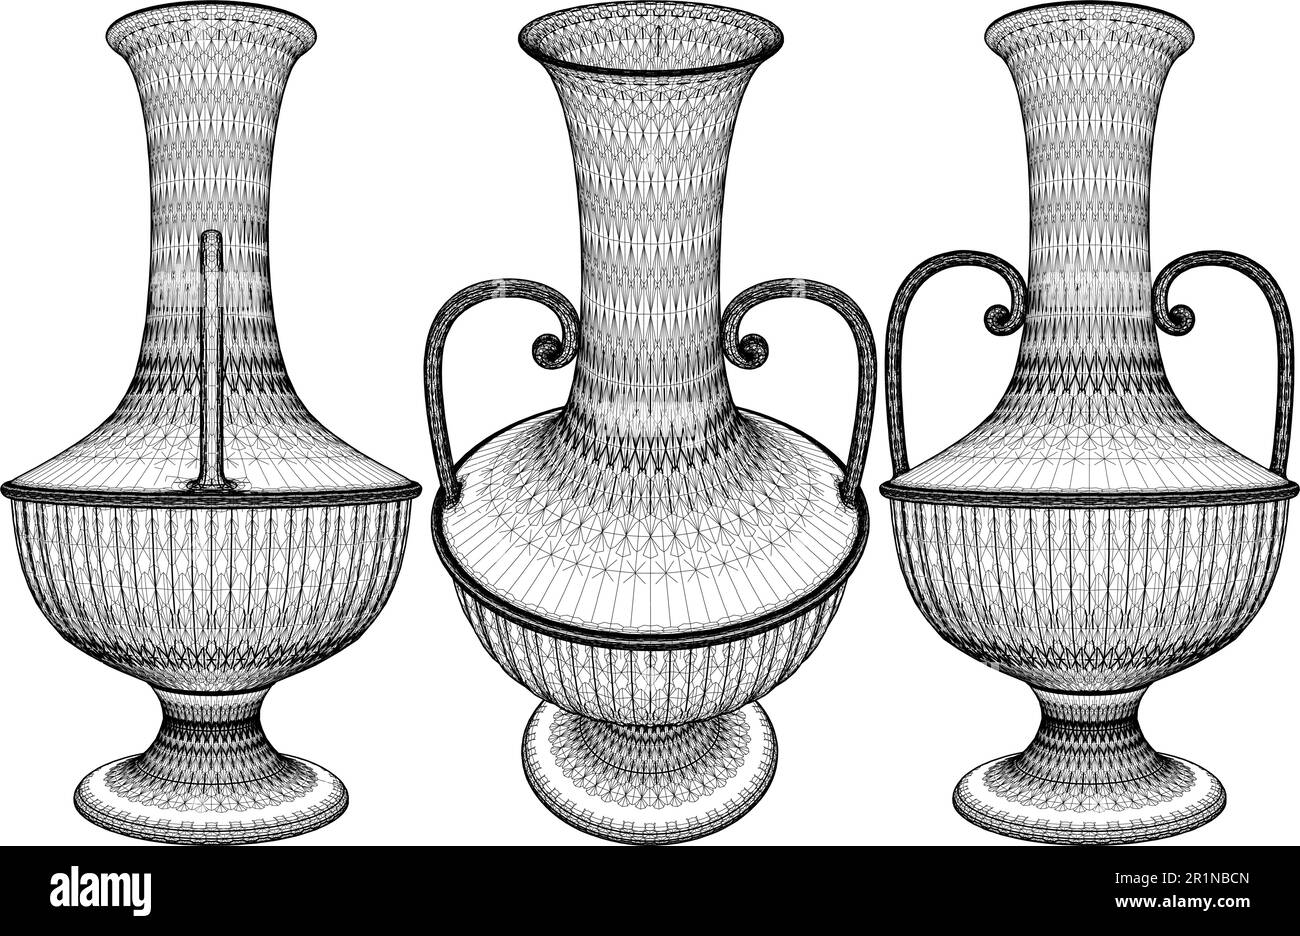 Antique grec Amphora Vector 01. Illustration isolée sur fond blanc. Une illustration vectorielle de l'Amphora grecque en céramique. Illustration de Vecteur